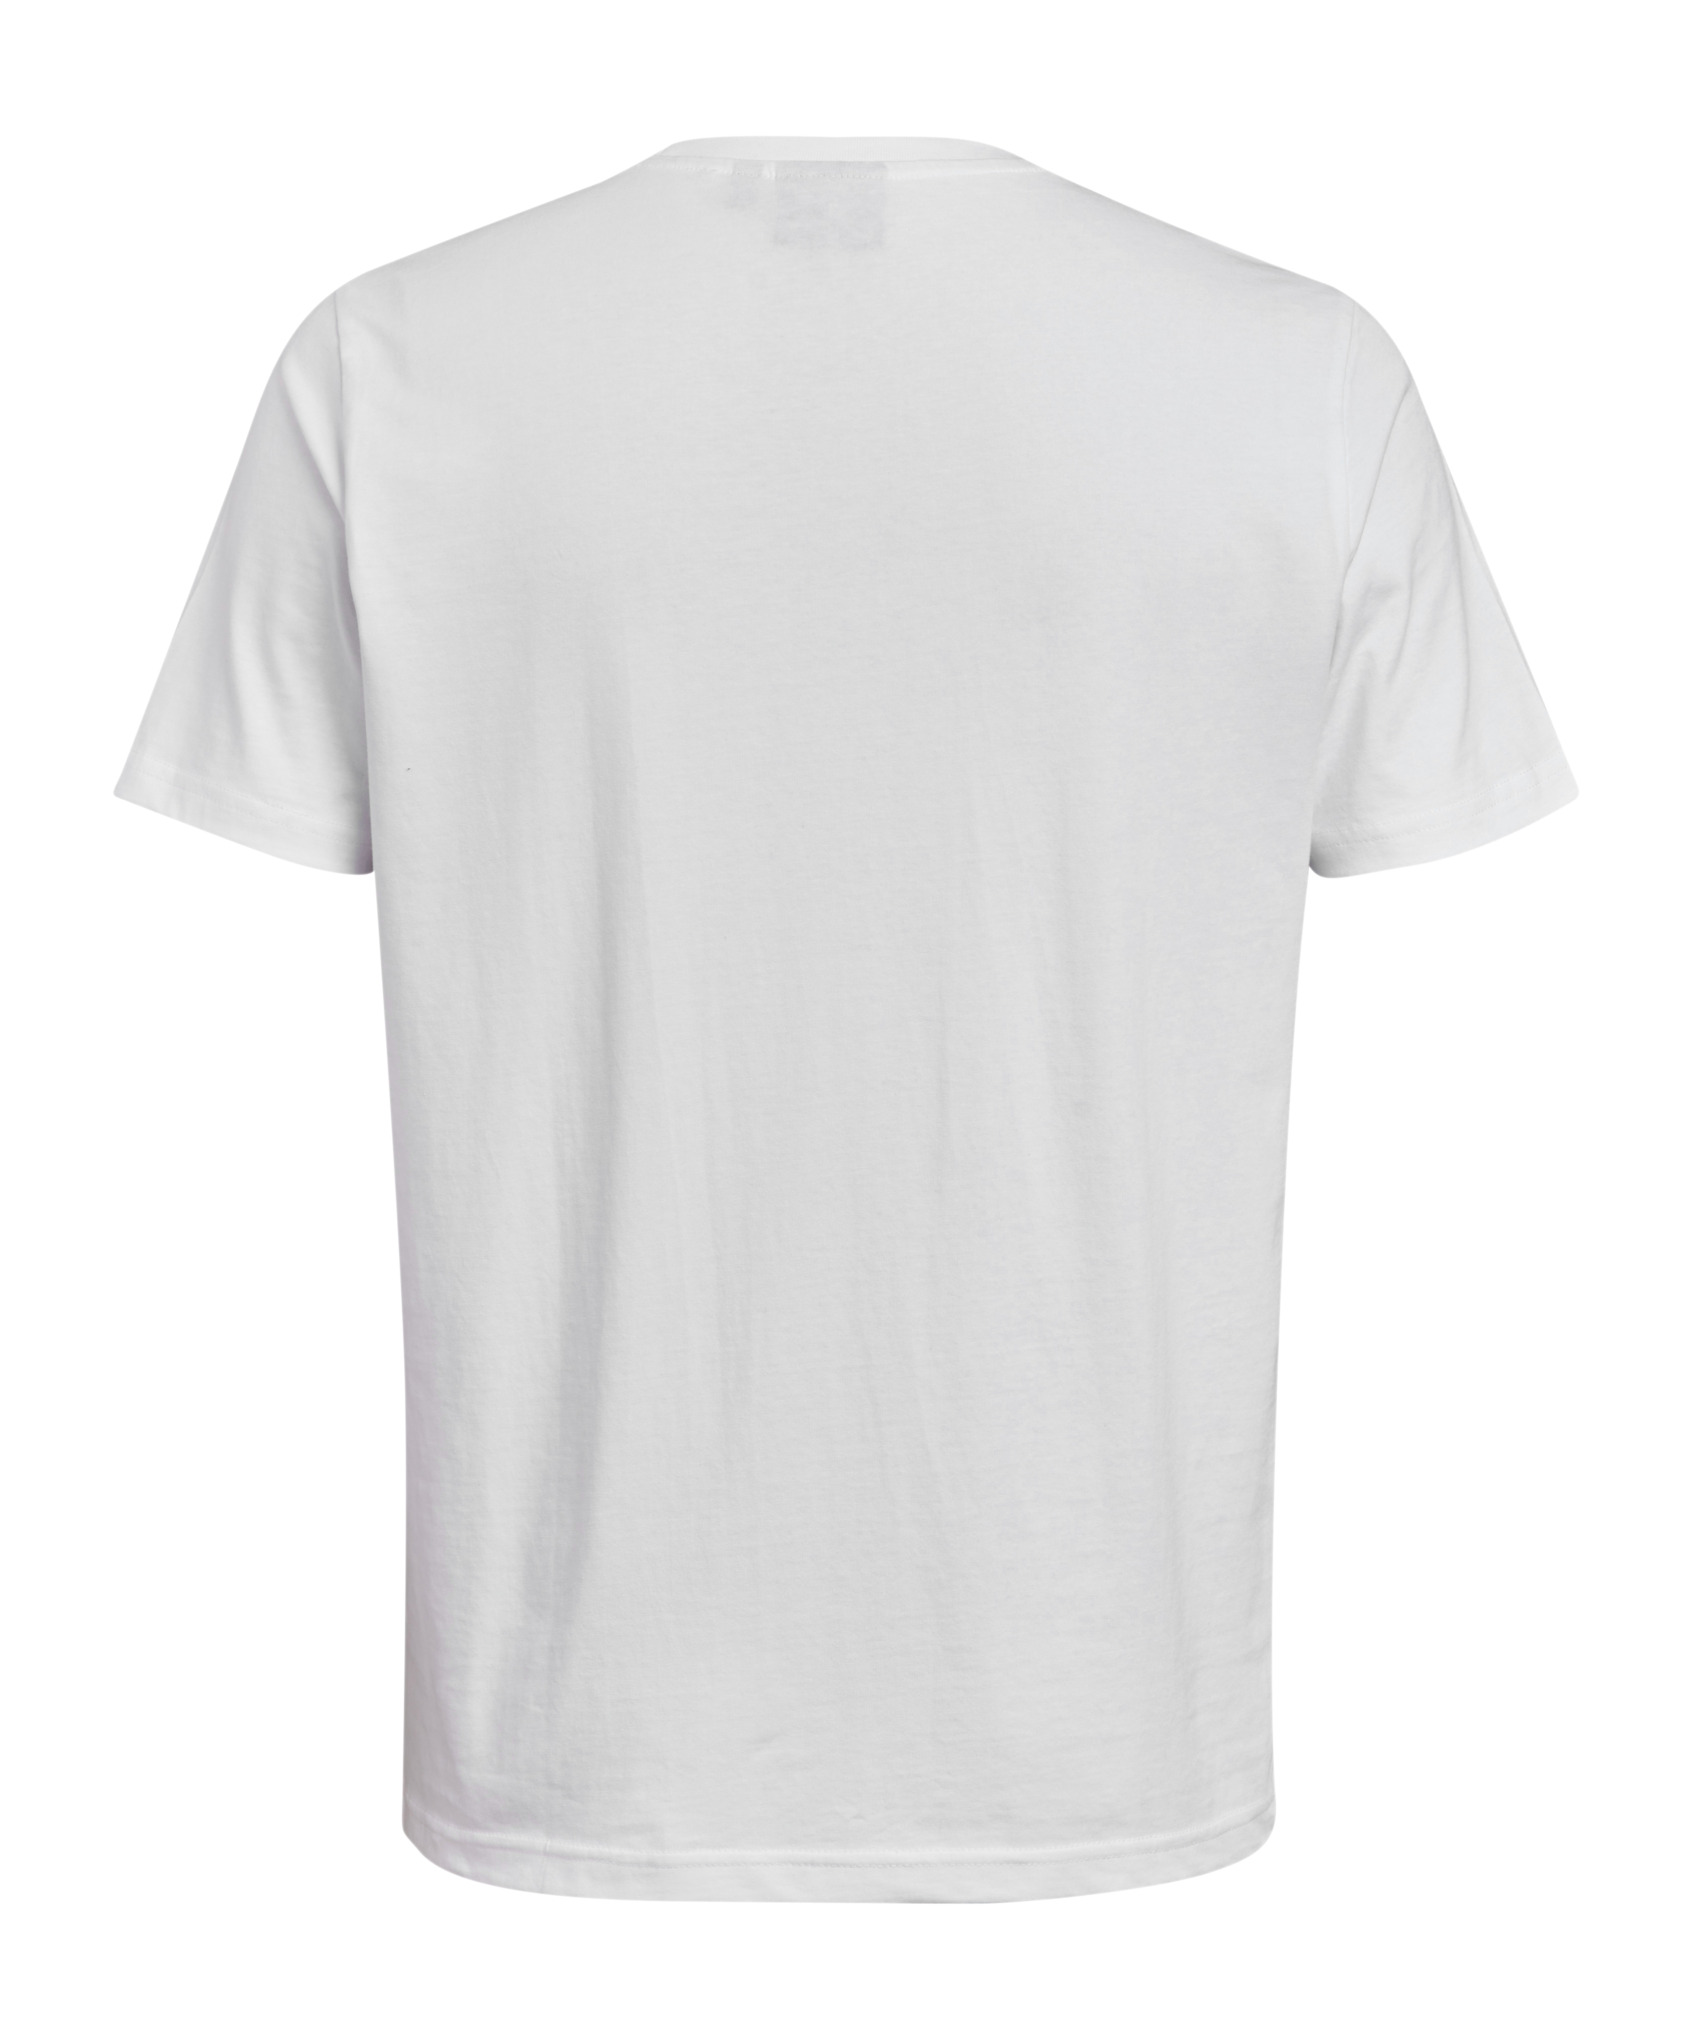 White STIHL logo t-shirt